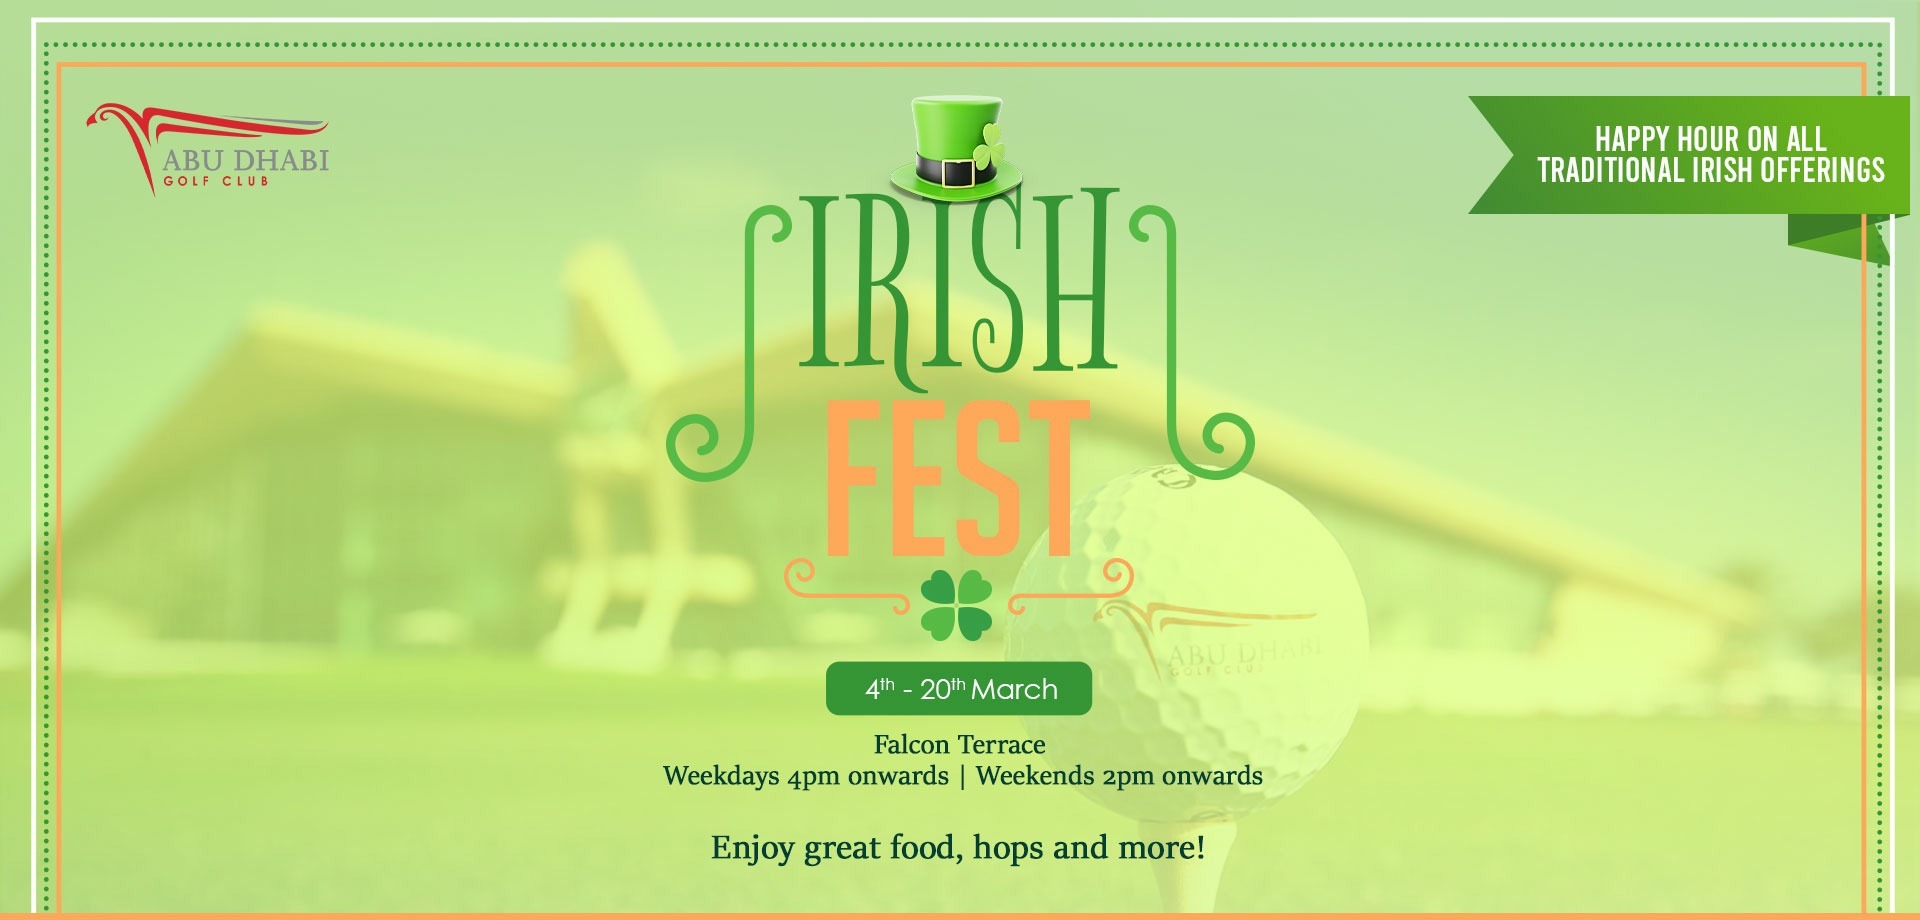 Irish Fest at Abu Dhabi Golf Club! - Coming Soon in UAE